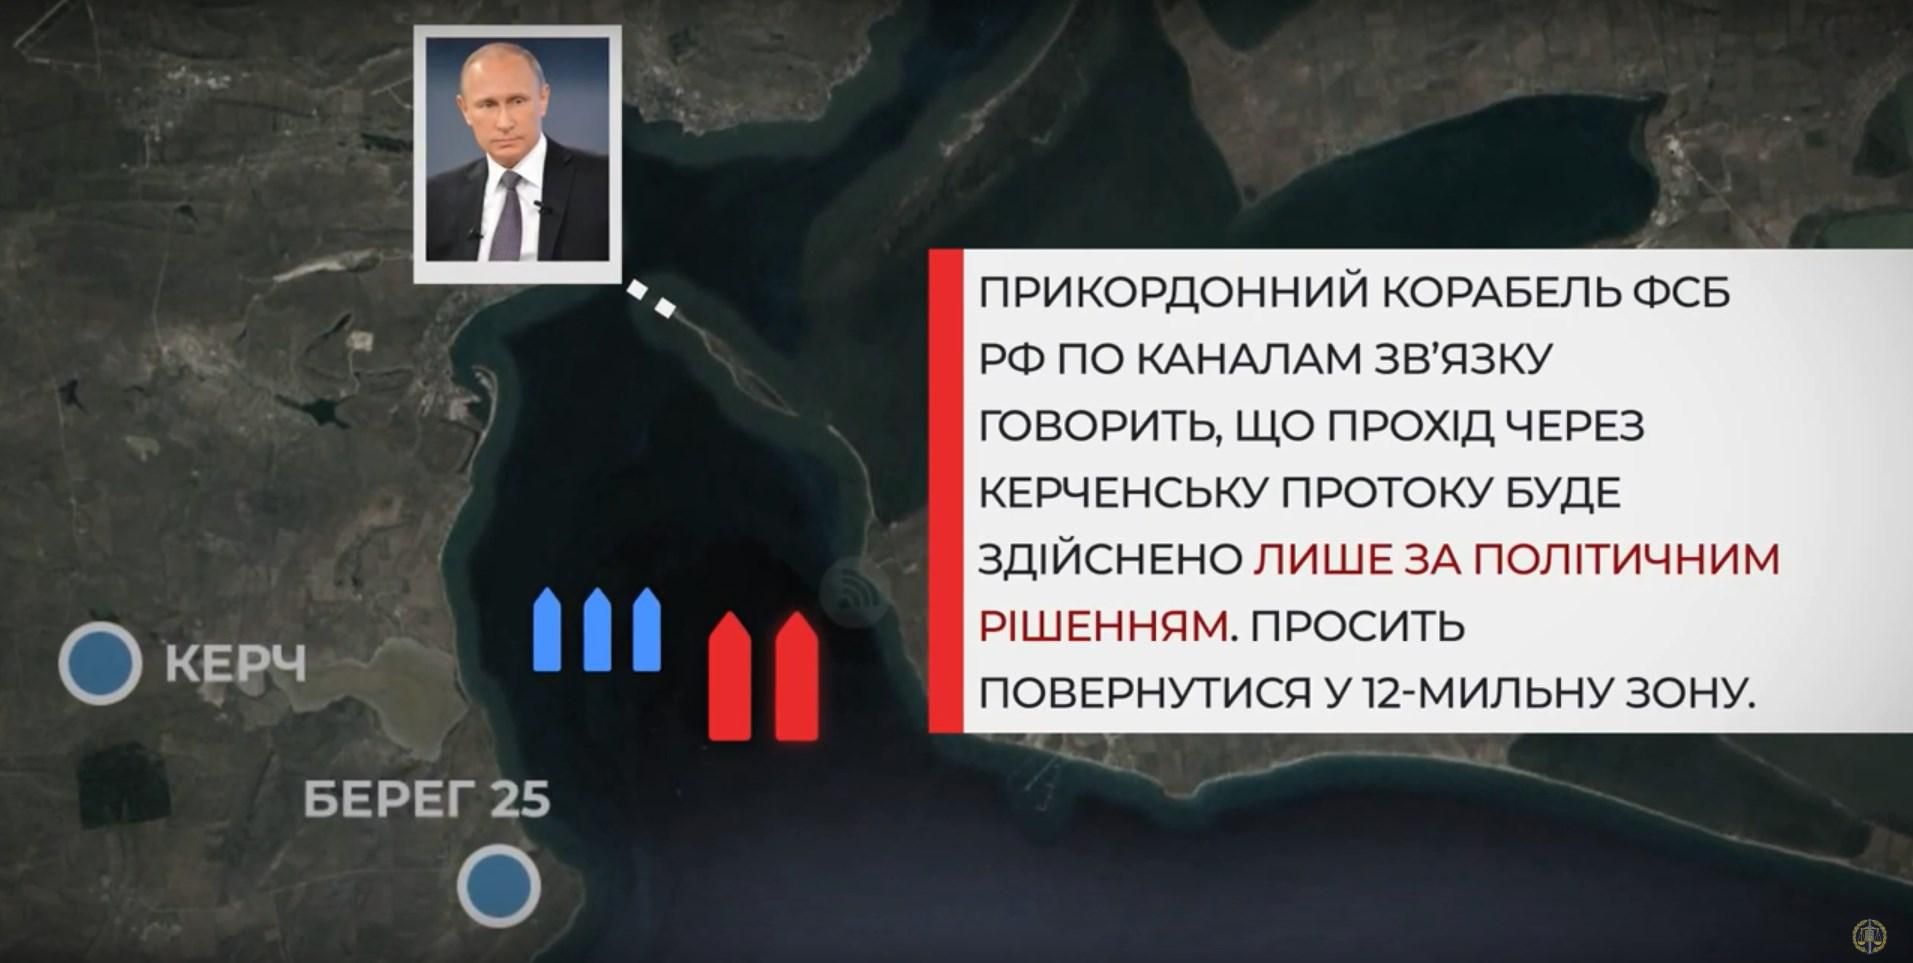 Как захватывали украинские корабли в Керчи: реконструкция событий